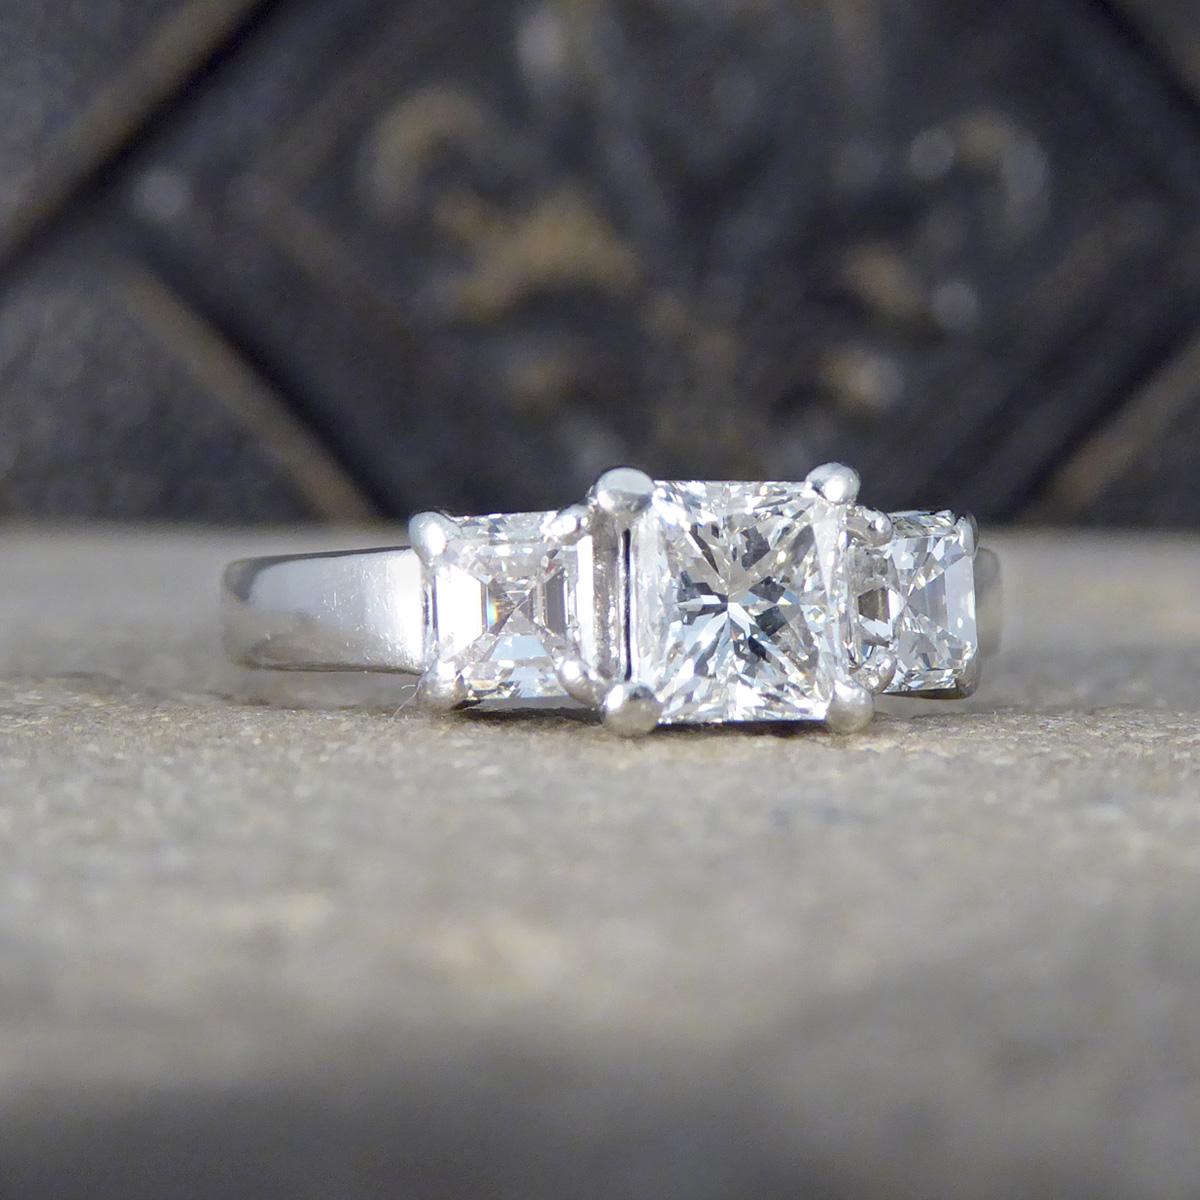 Unser bezaubernder Drei-Stein-Ring mit Princess- und Asscher-Schliff aus Platin ist ein Meisterwerk der Eleganz und Raffinesse. Dieser atemberaubende Ring zeigt einen brillanten 0,77-cm-Diamanten im Princess-Schliff, der fachmännisch in der Mitte